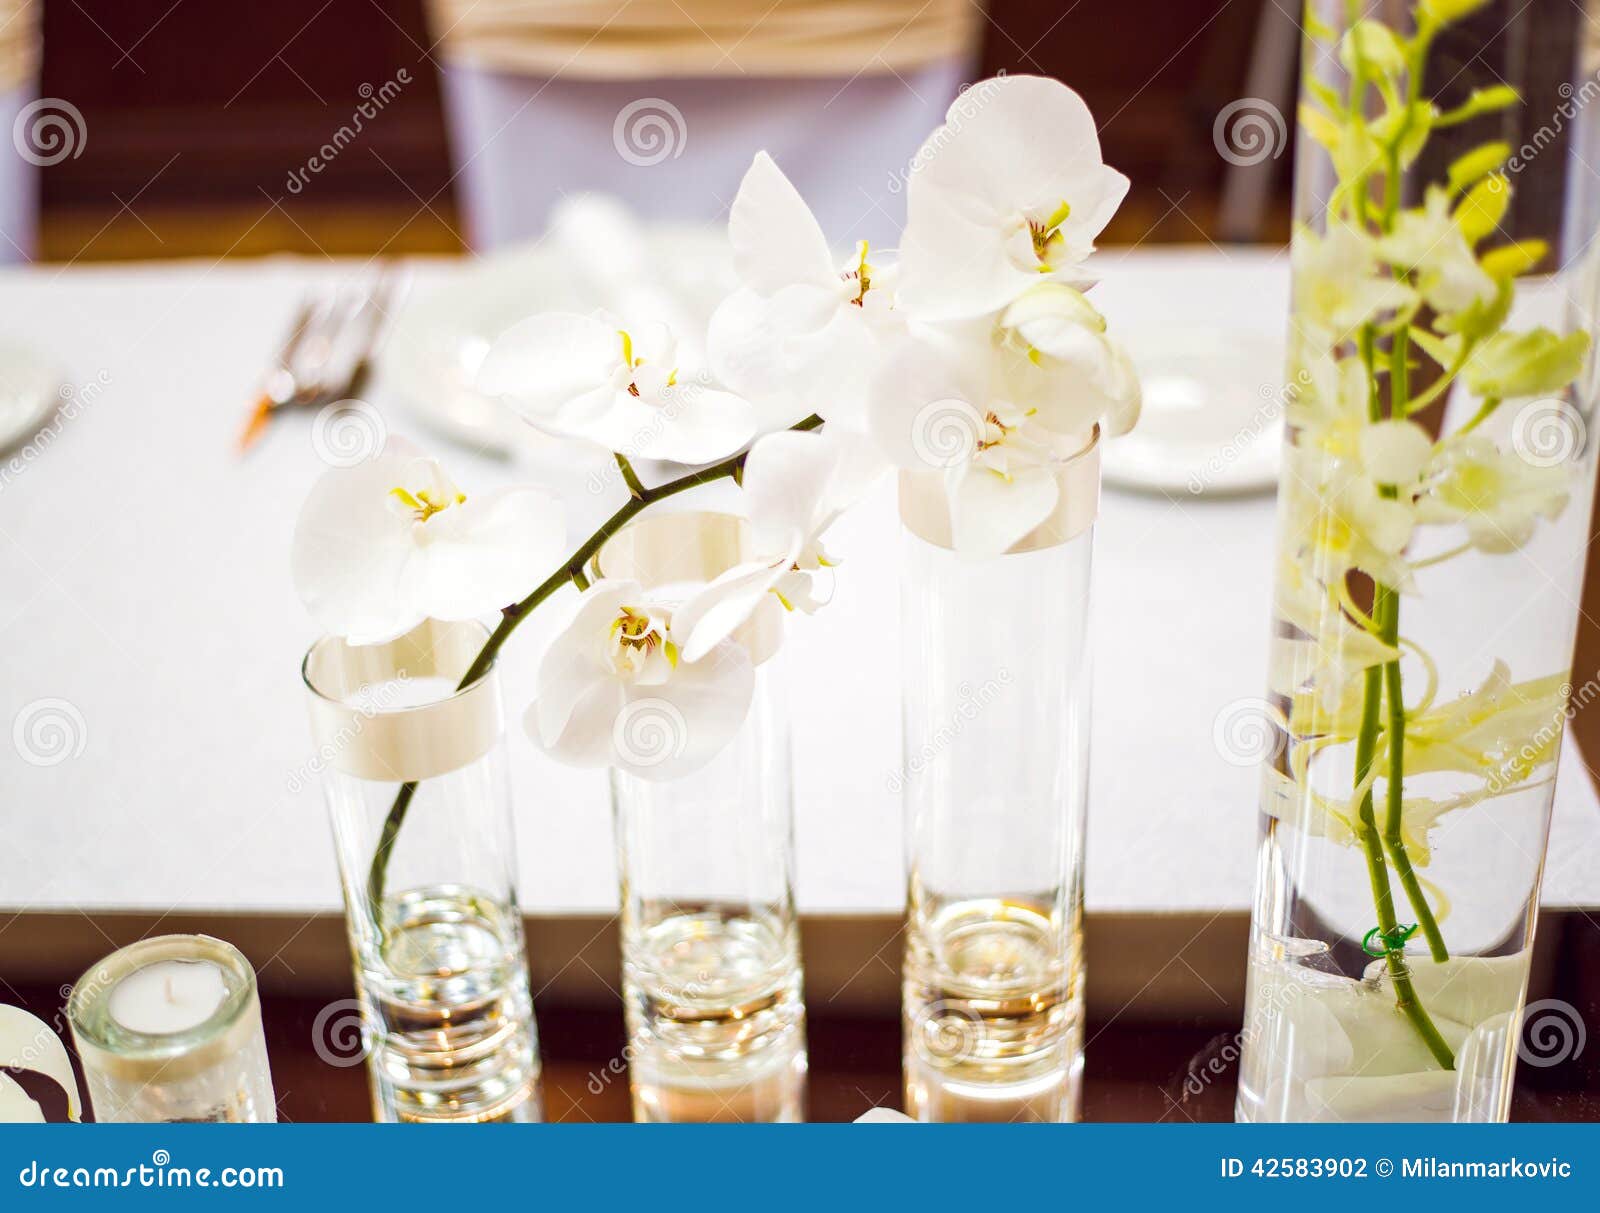 Bröllop för tabell för pargarneringdockor exponeringsglas inverterat. Gifta sig tabellgarnering med orkidén och glasföremål